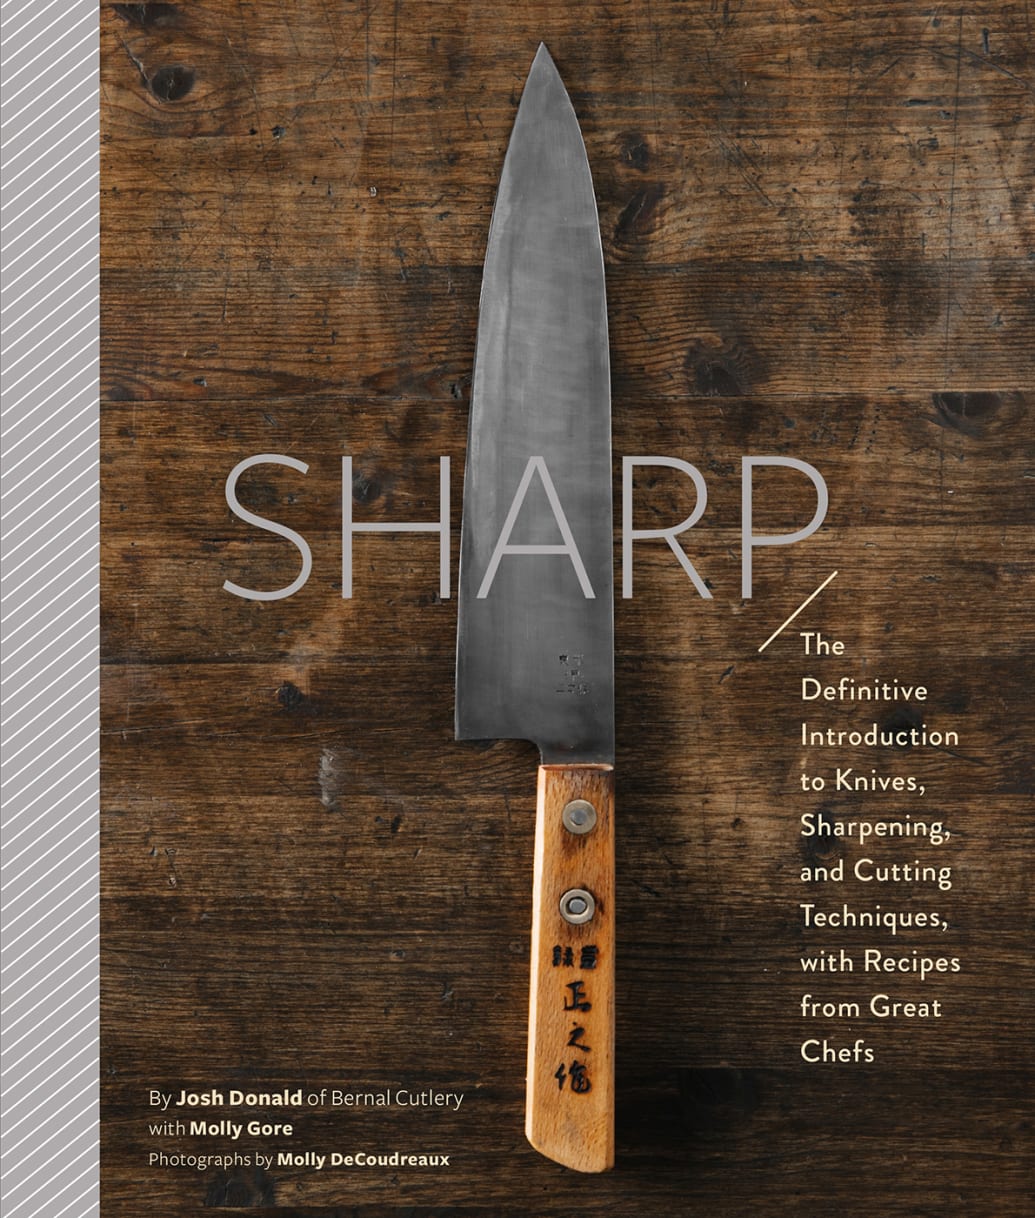 Pro knife sharpner - sporting goods - by owner - sale - craigslist